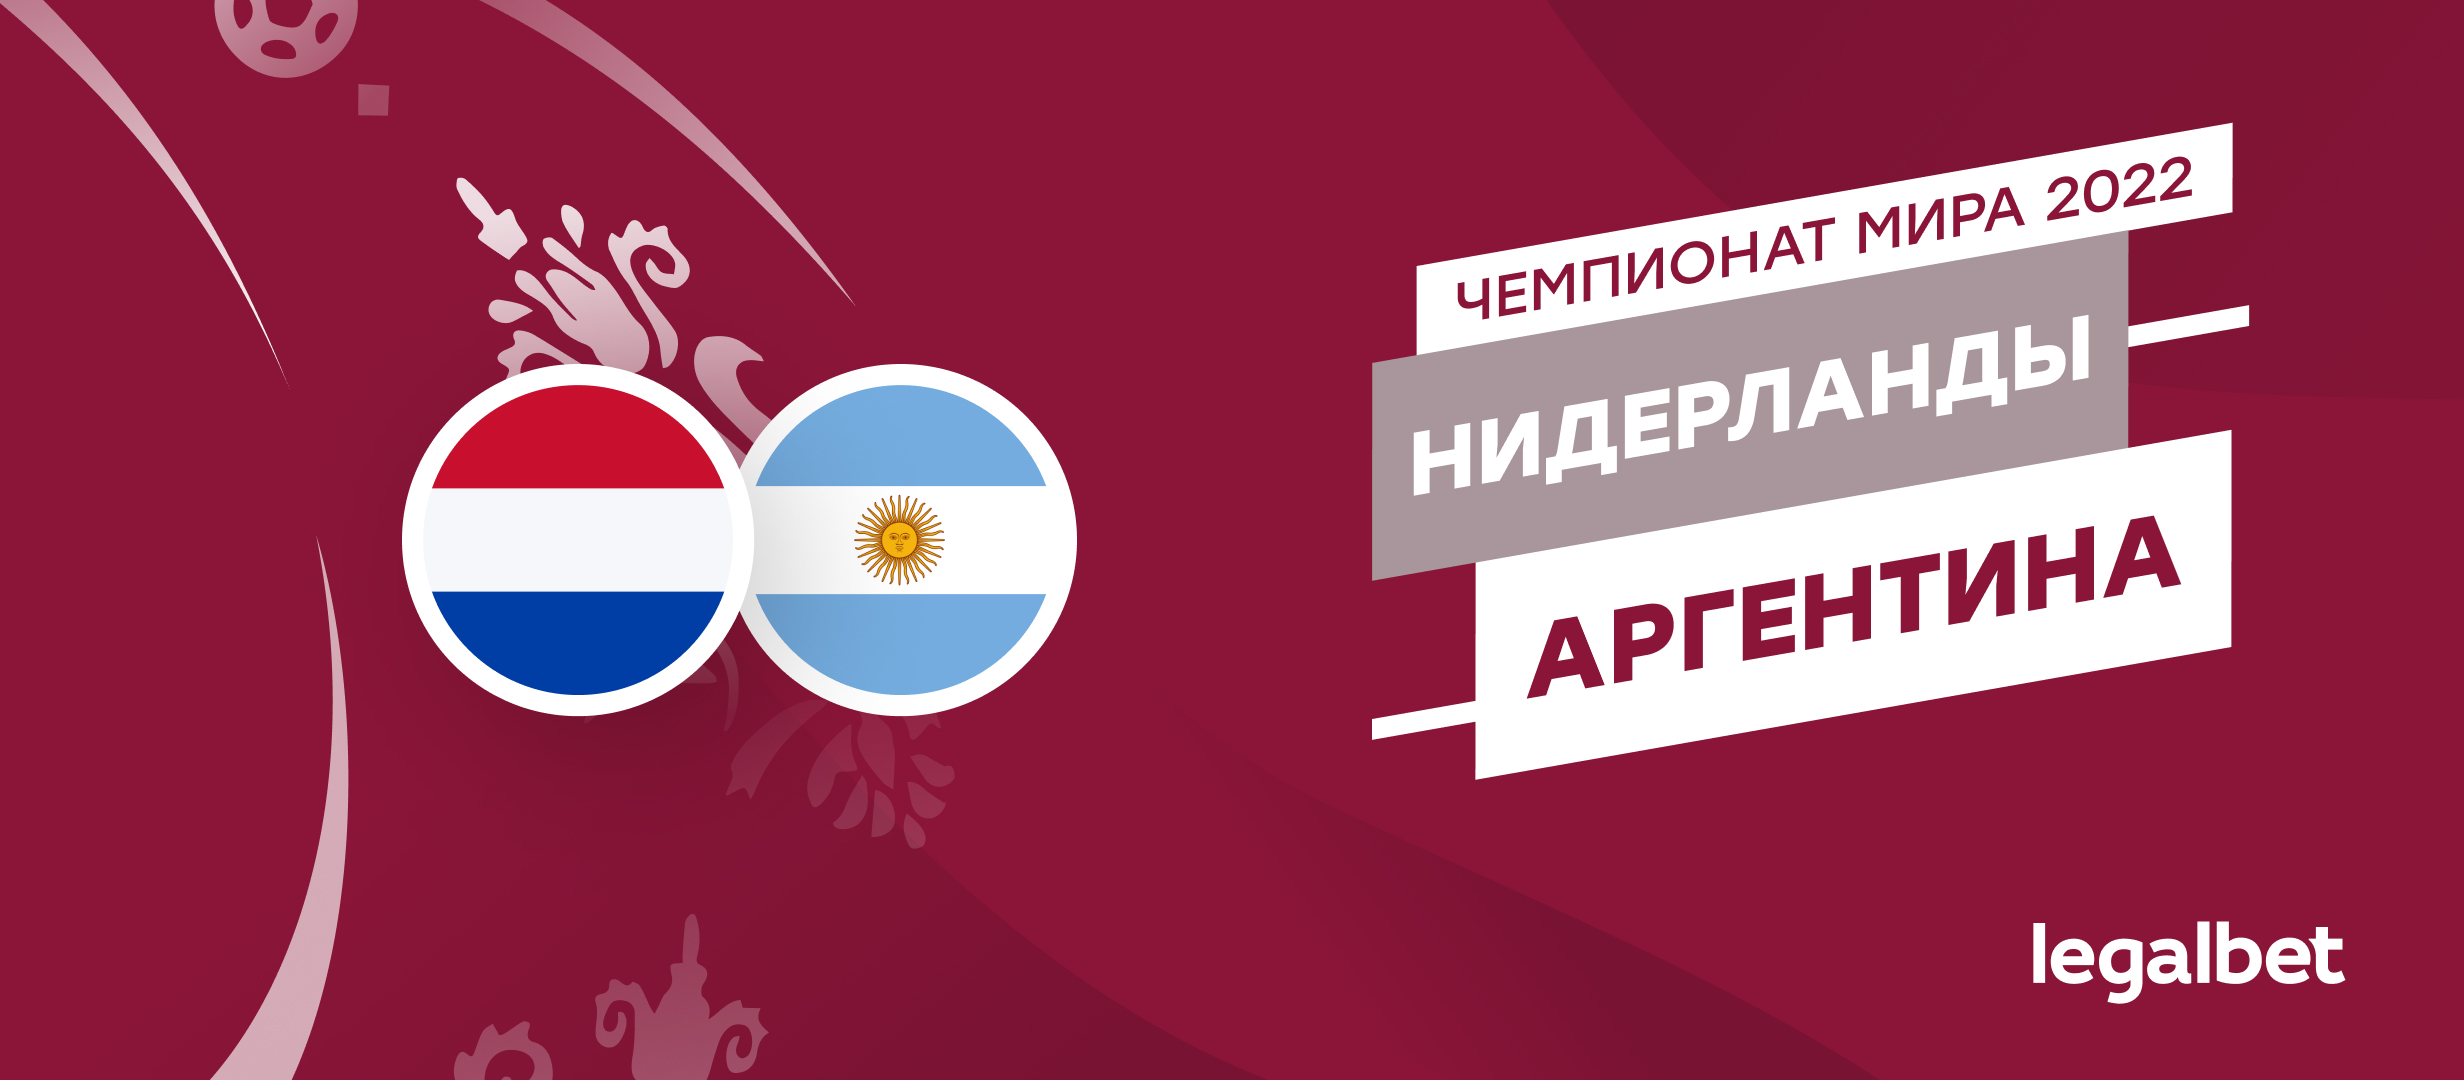 Нидерланды — Аргентина: прогноз, ставки и коэффициенты на матч ЧМ-2022